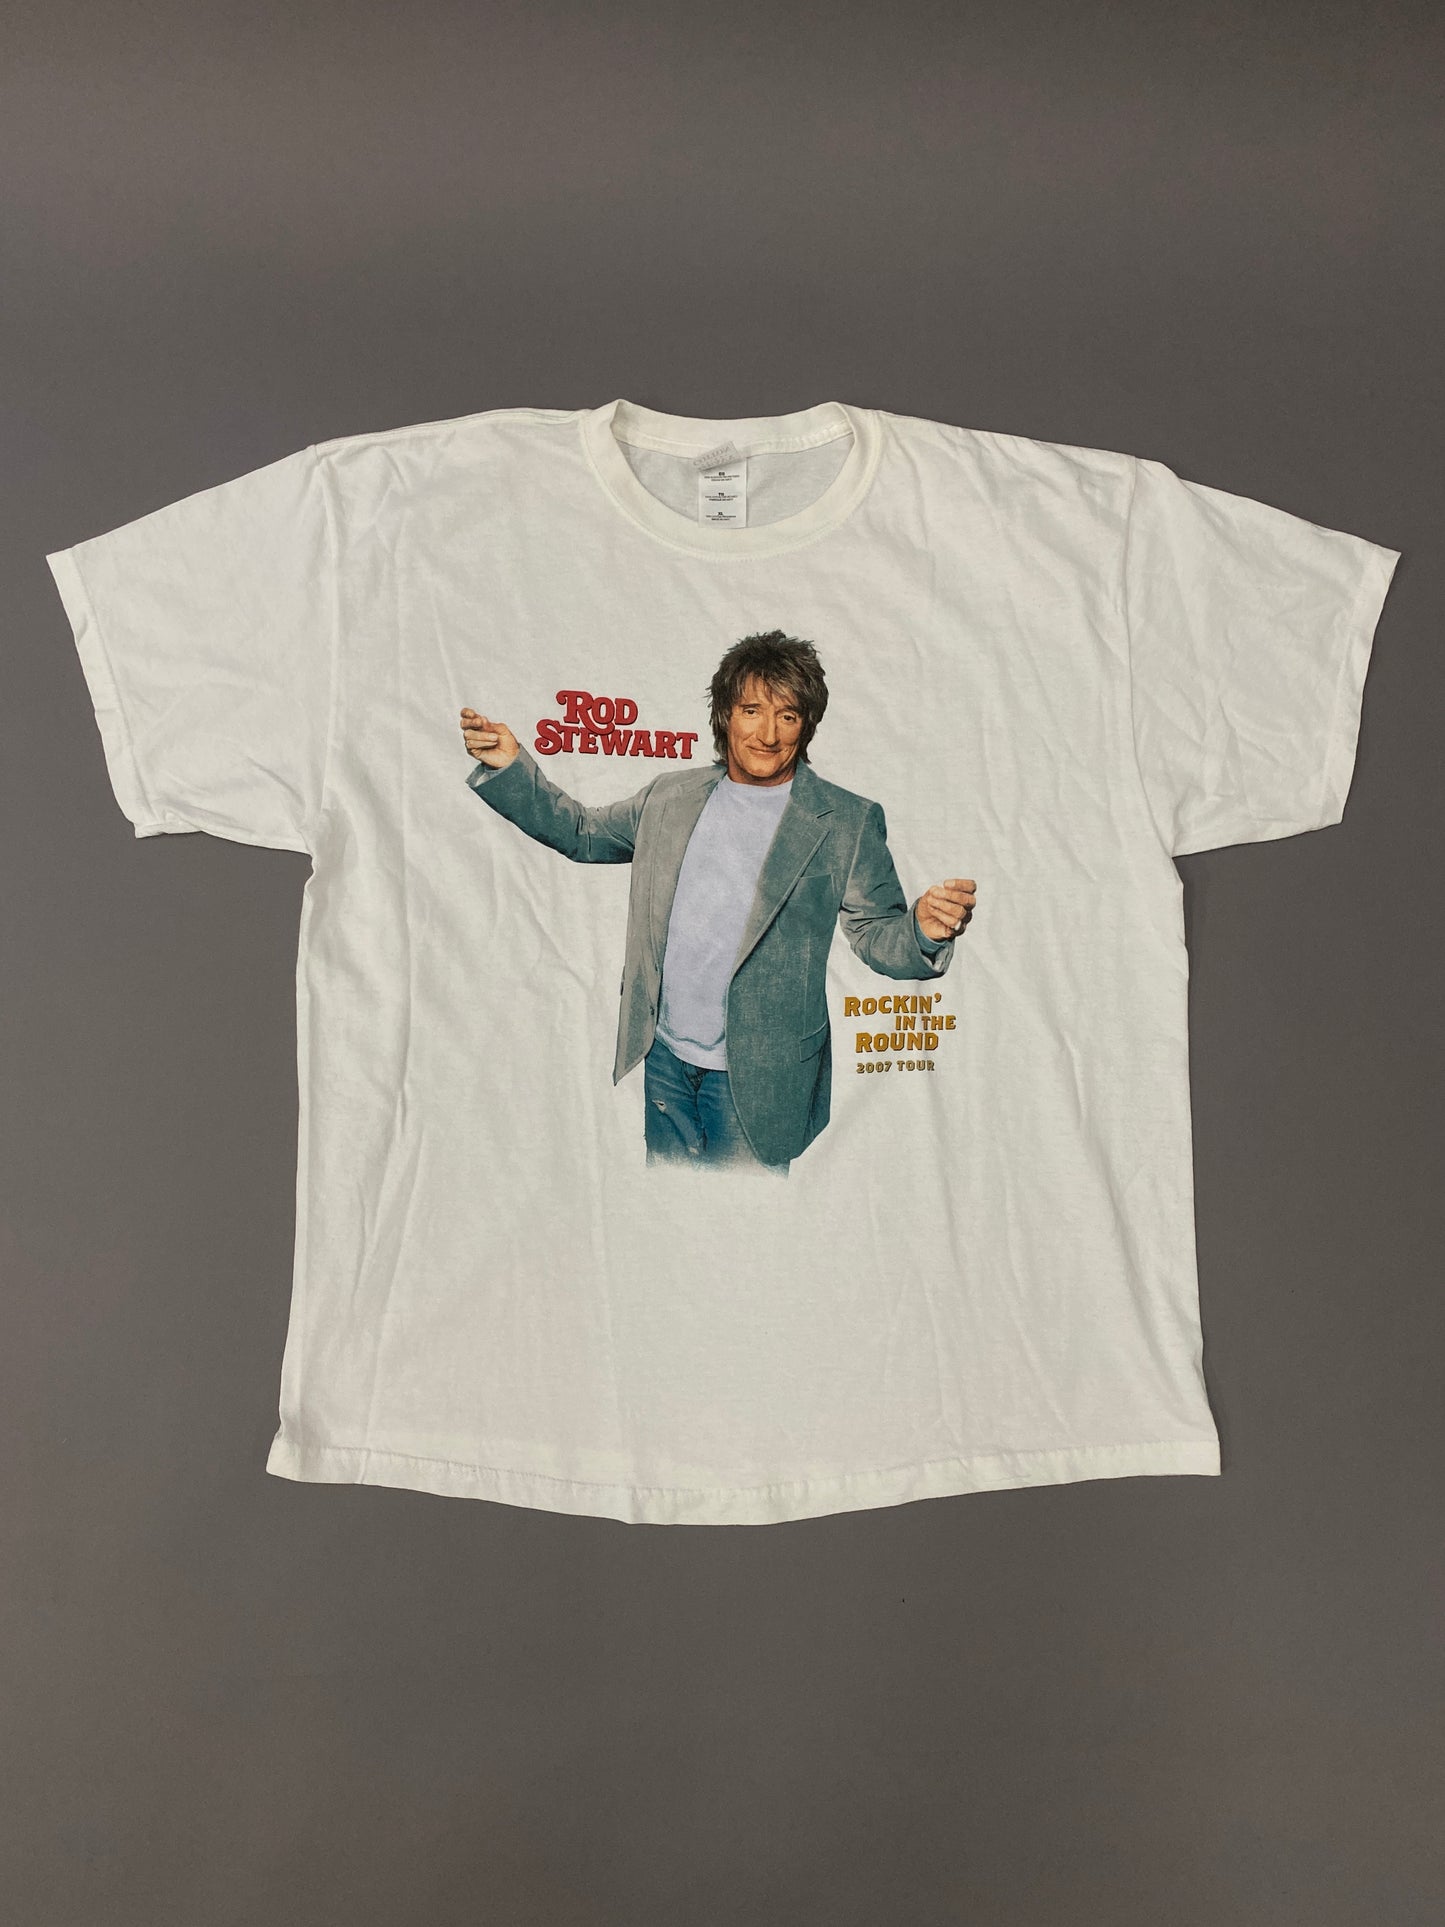 Rod Stewart 2007 T-shirt